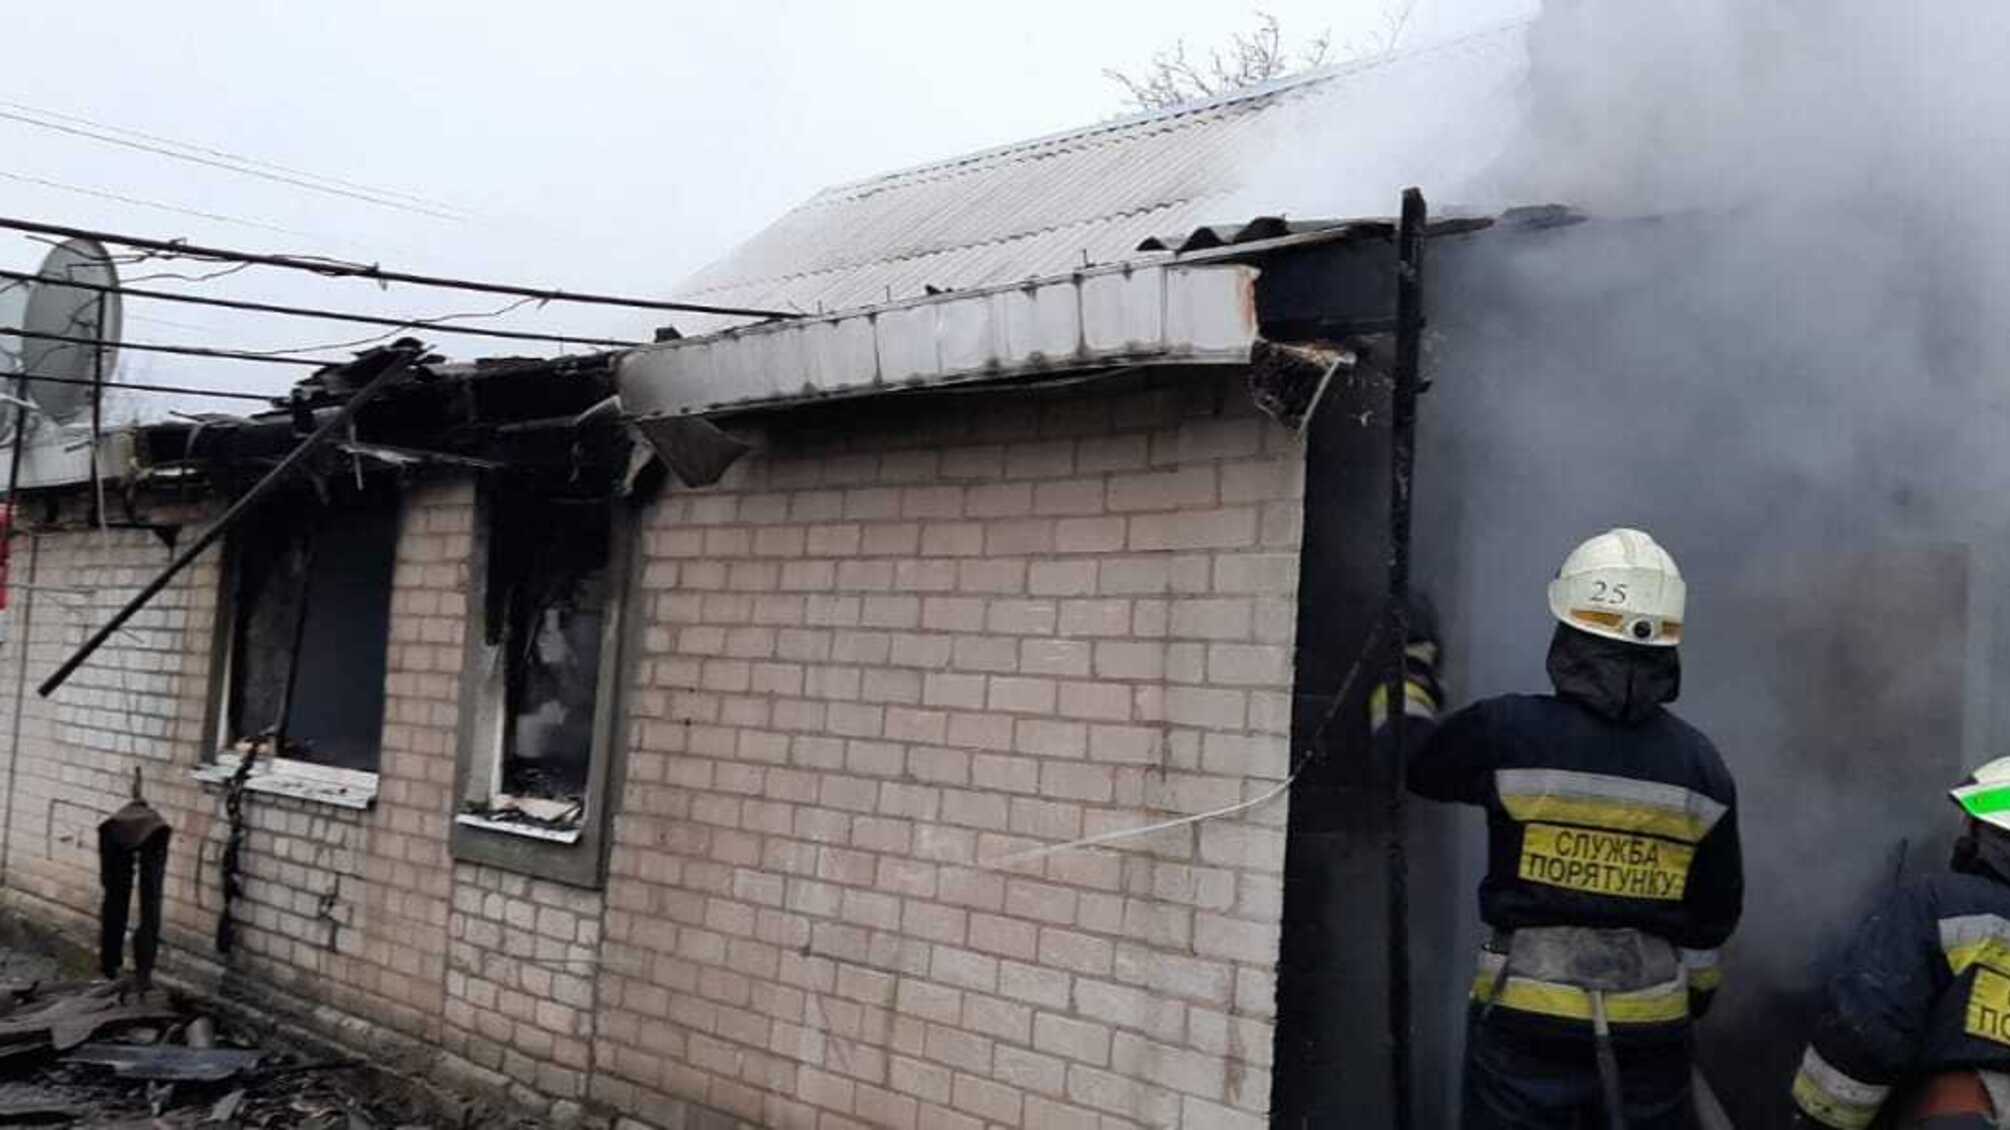 Дніпропетровська область: вогнеборці ліквідували пожежу на території приватного сектору